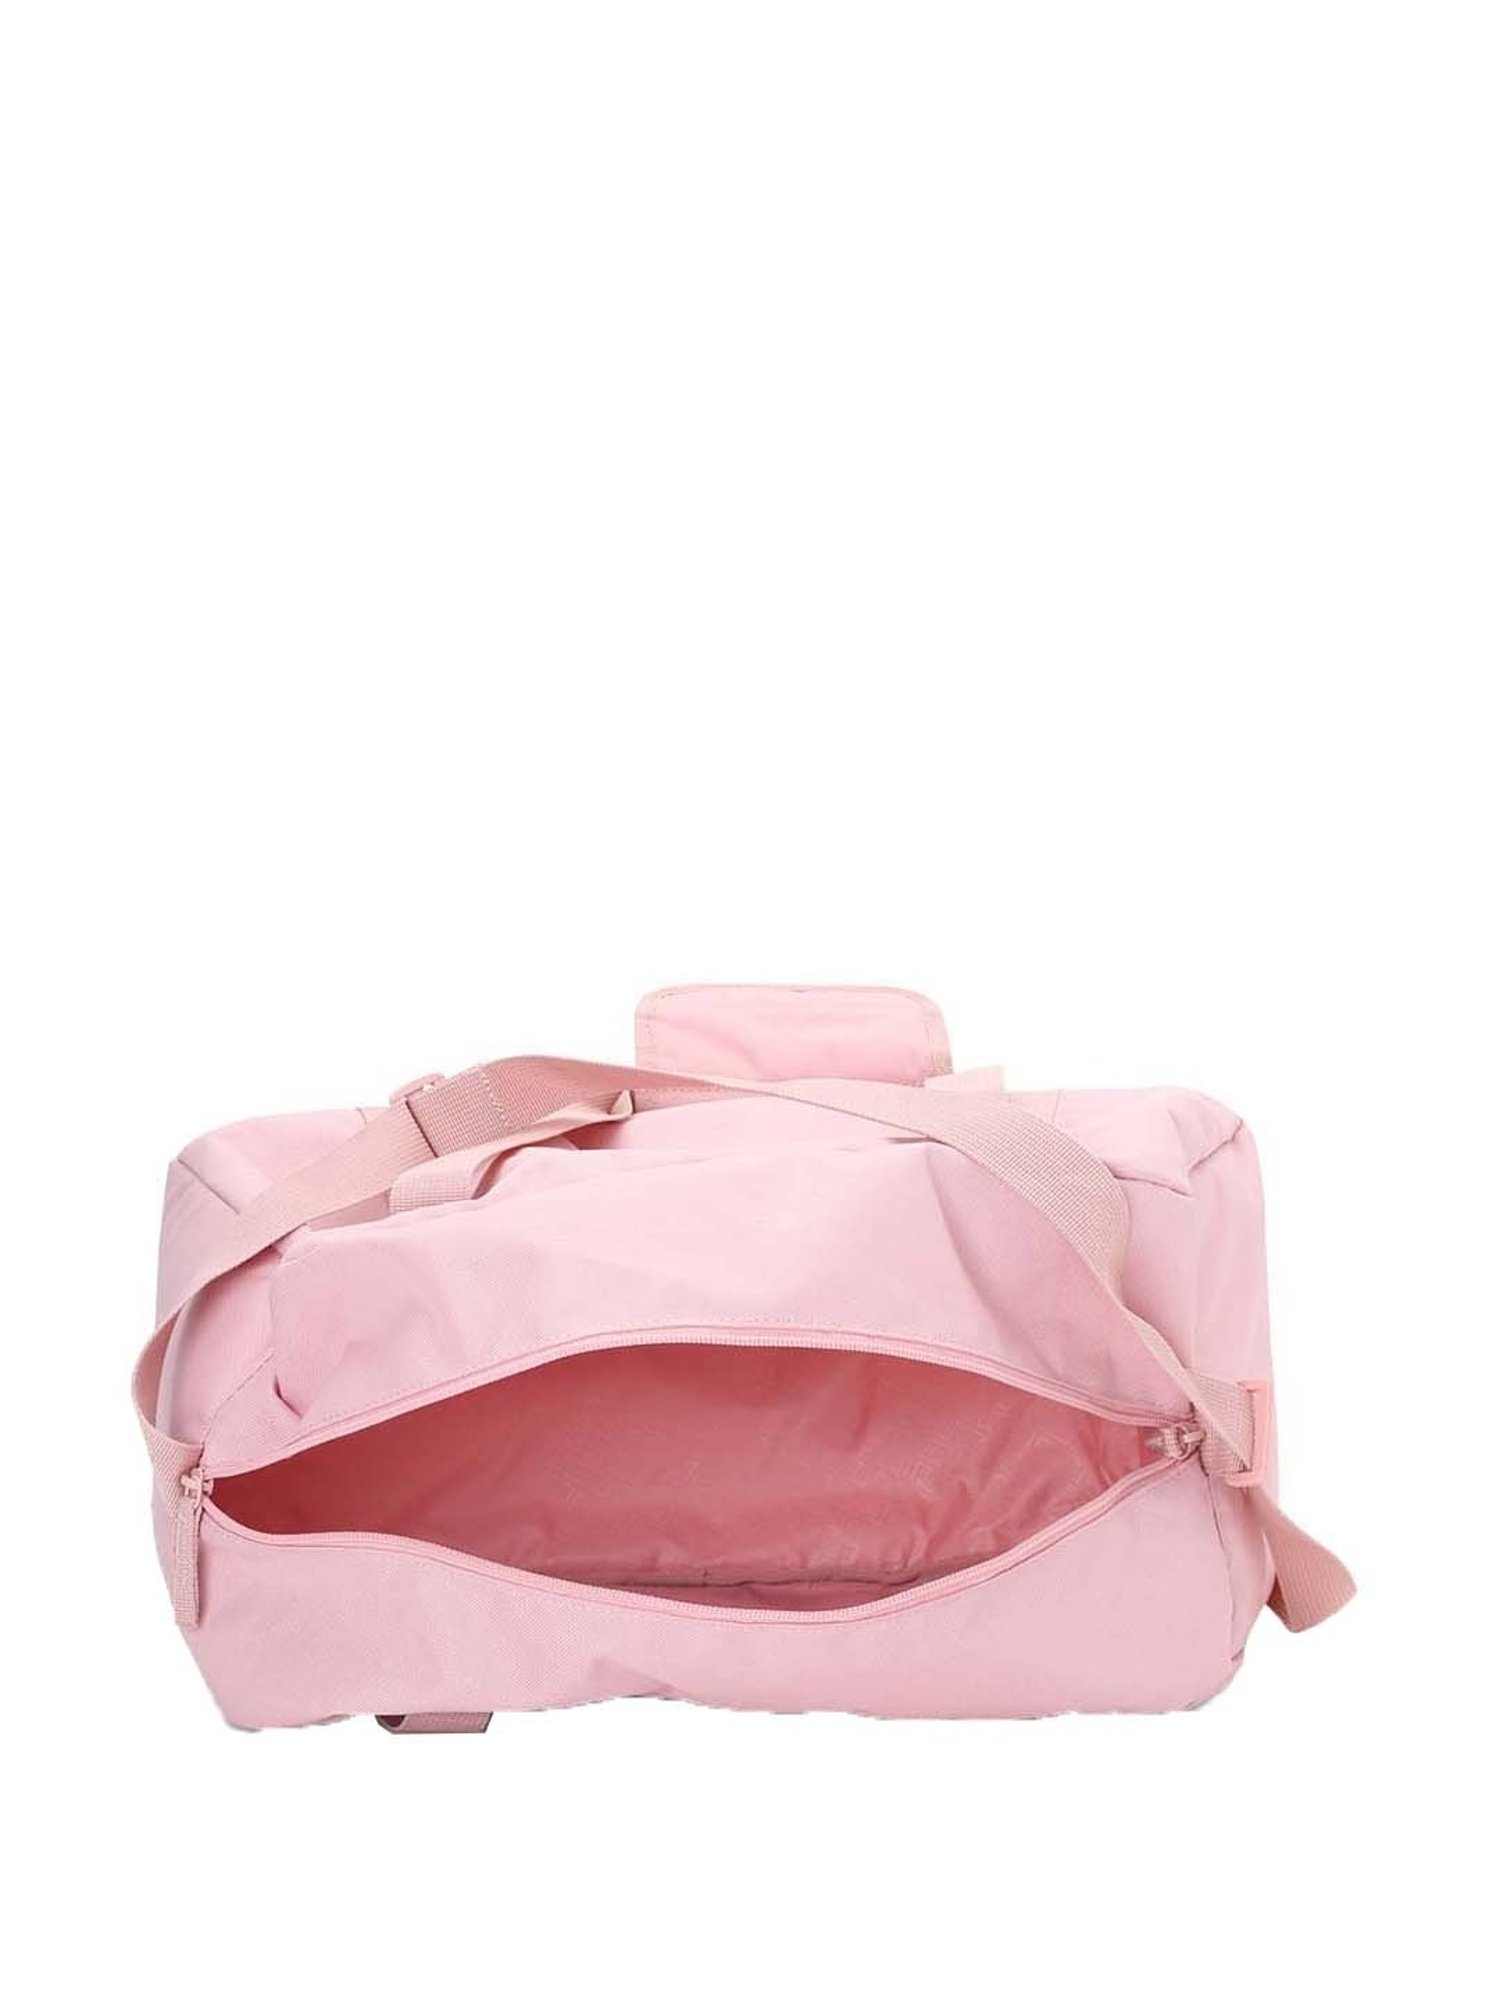 Buy Puma Pink Medium Duffle Bag At Best Price Tata